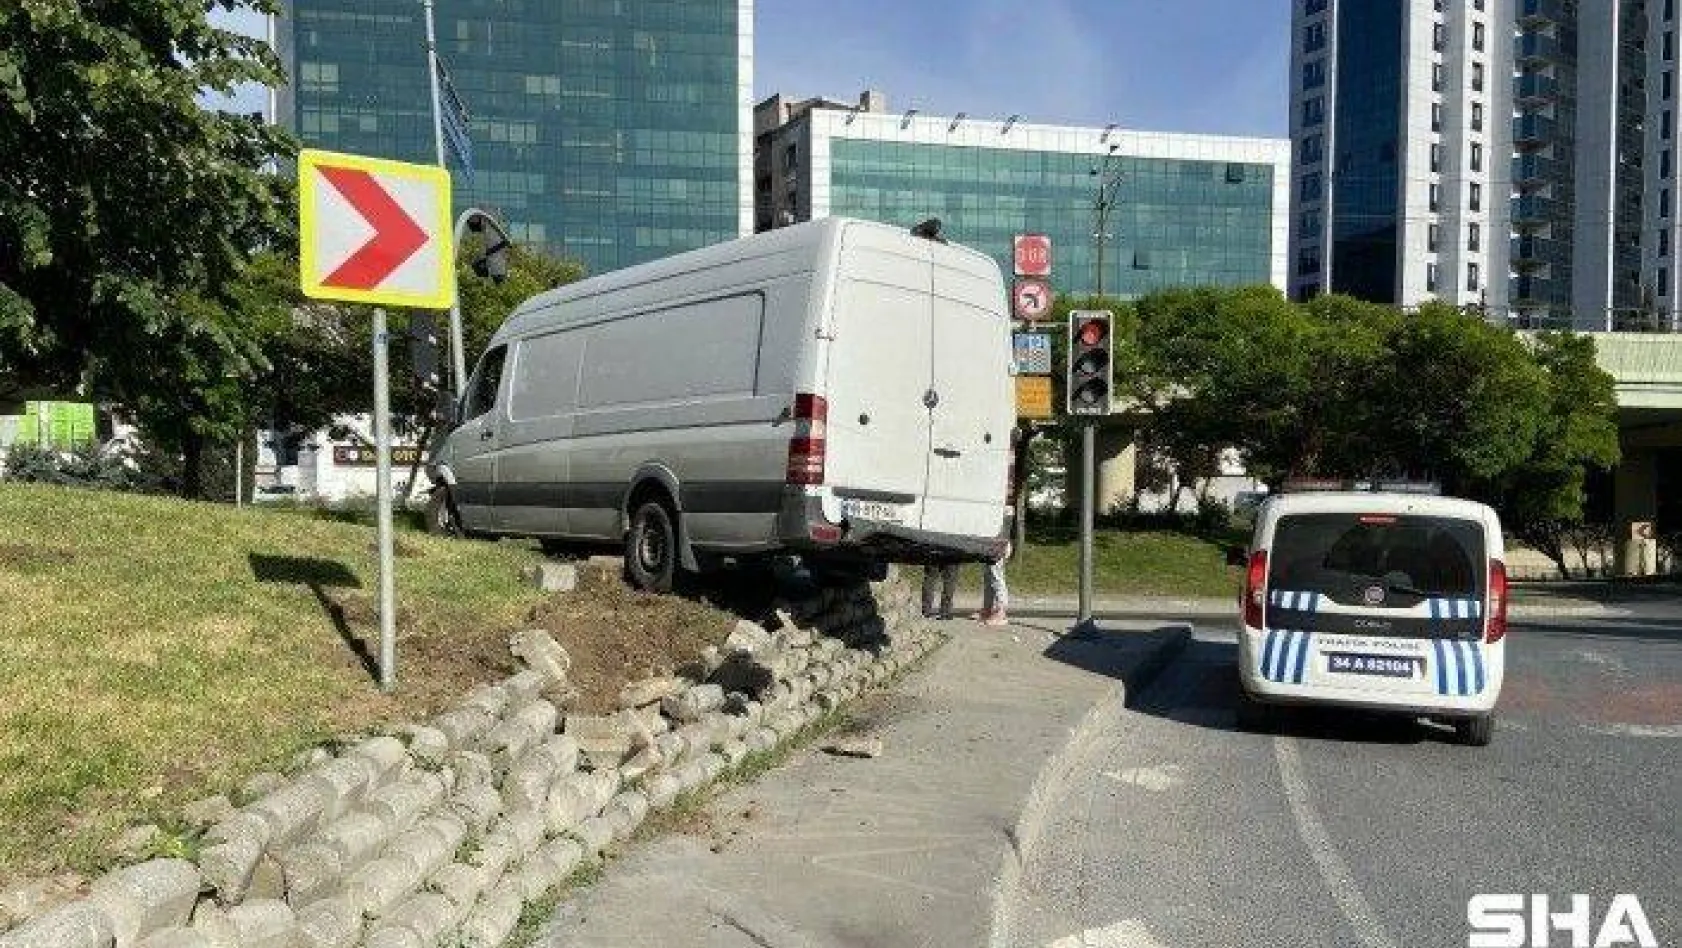 (ÖZEL) Zeytinburnu'nda akıllara durgunluk veren kaza